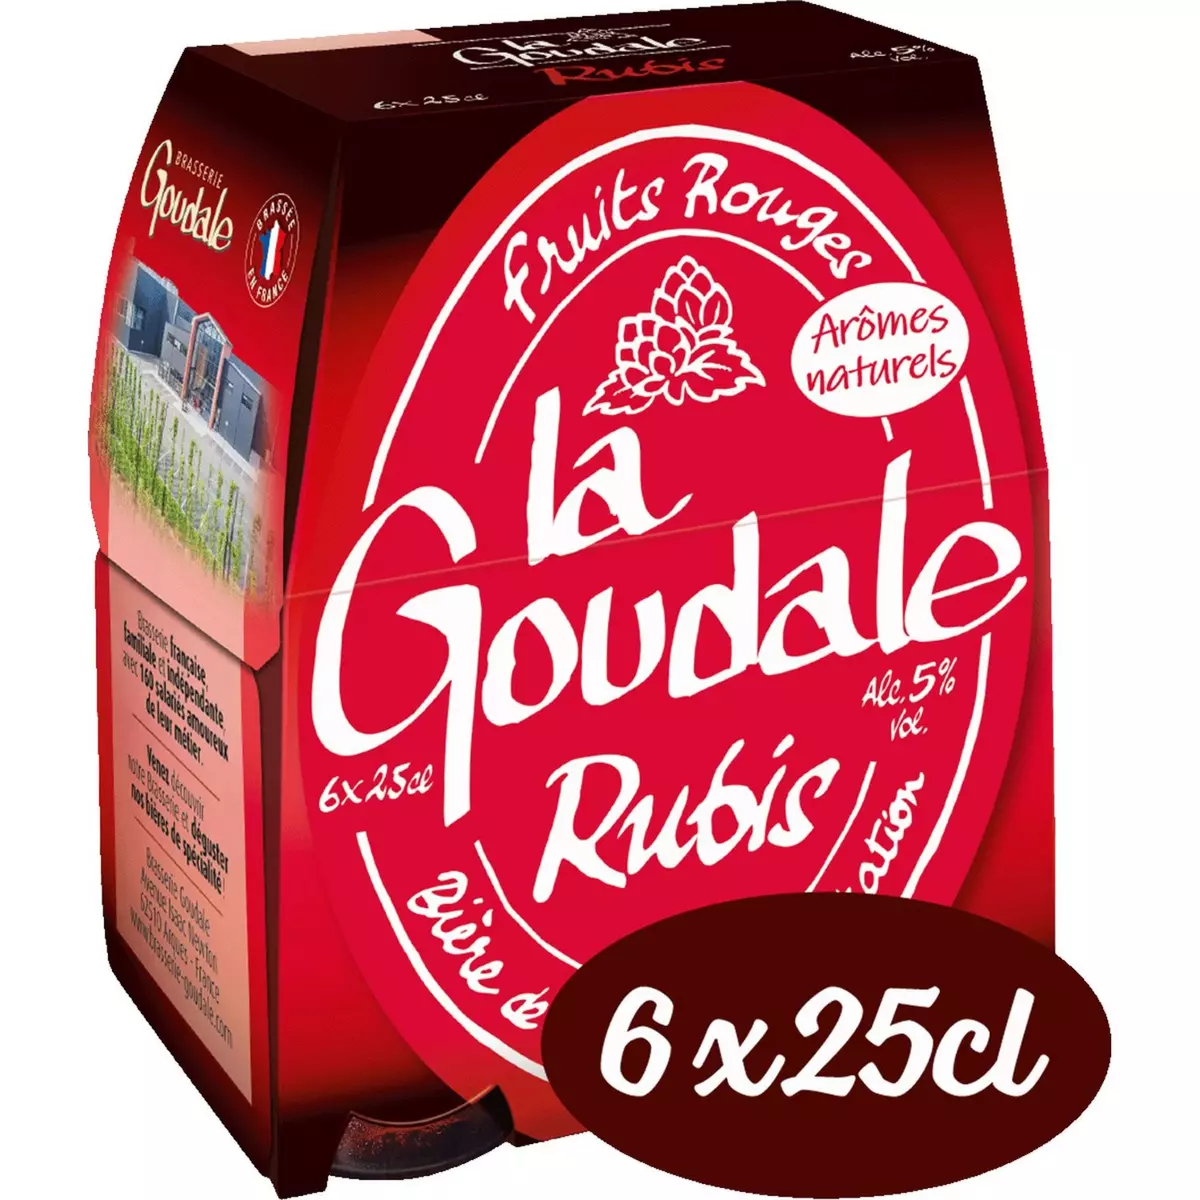 LA GOUDALE Bière rubis aromatisée aux fruits rouges 5% bouteilles 6x25cl